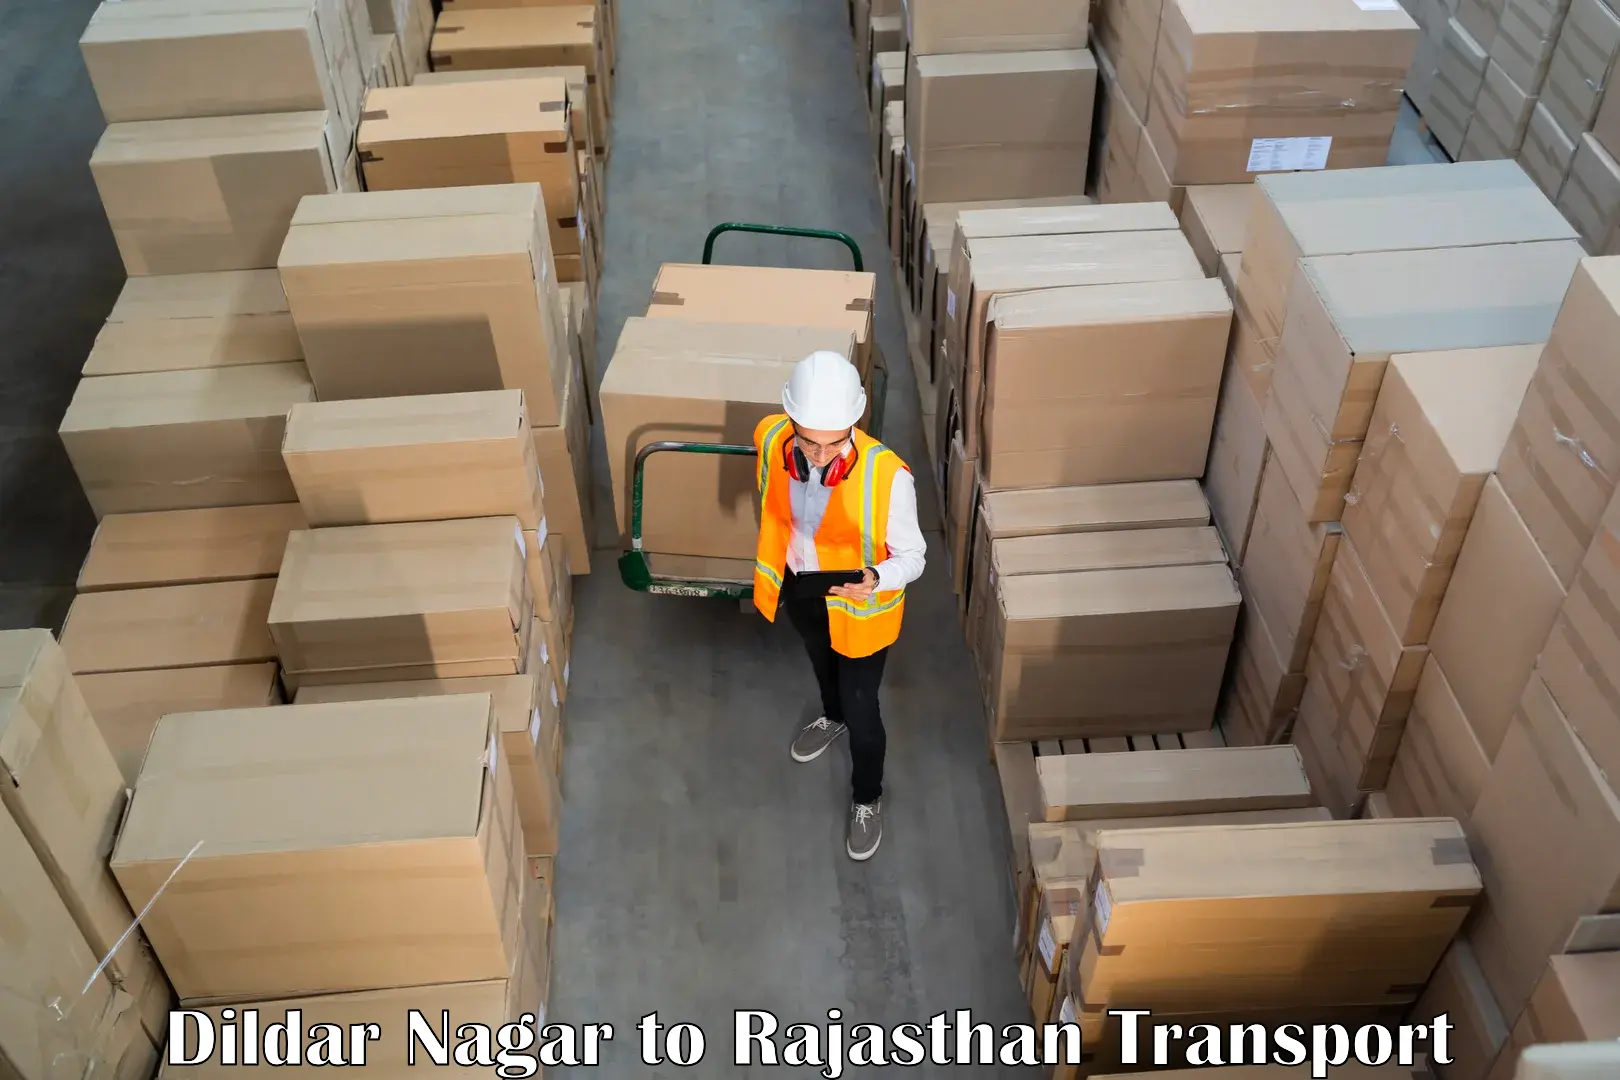 Cargo transportation services Dildar Nagar to Raila